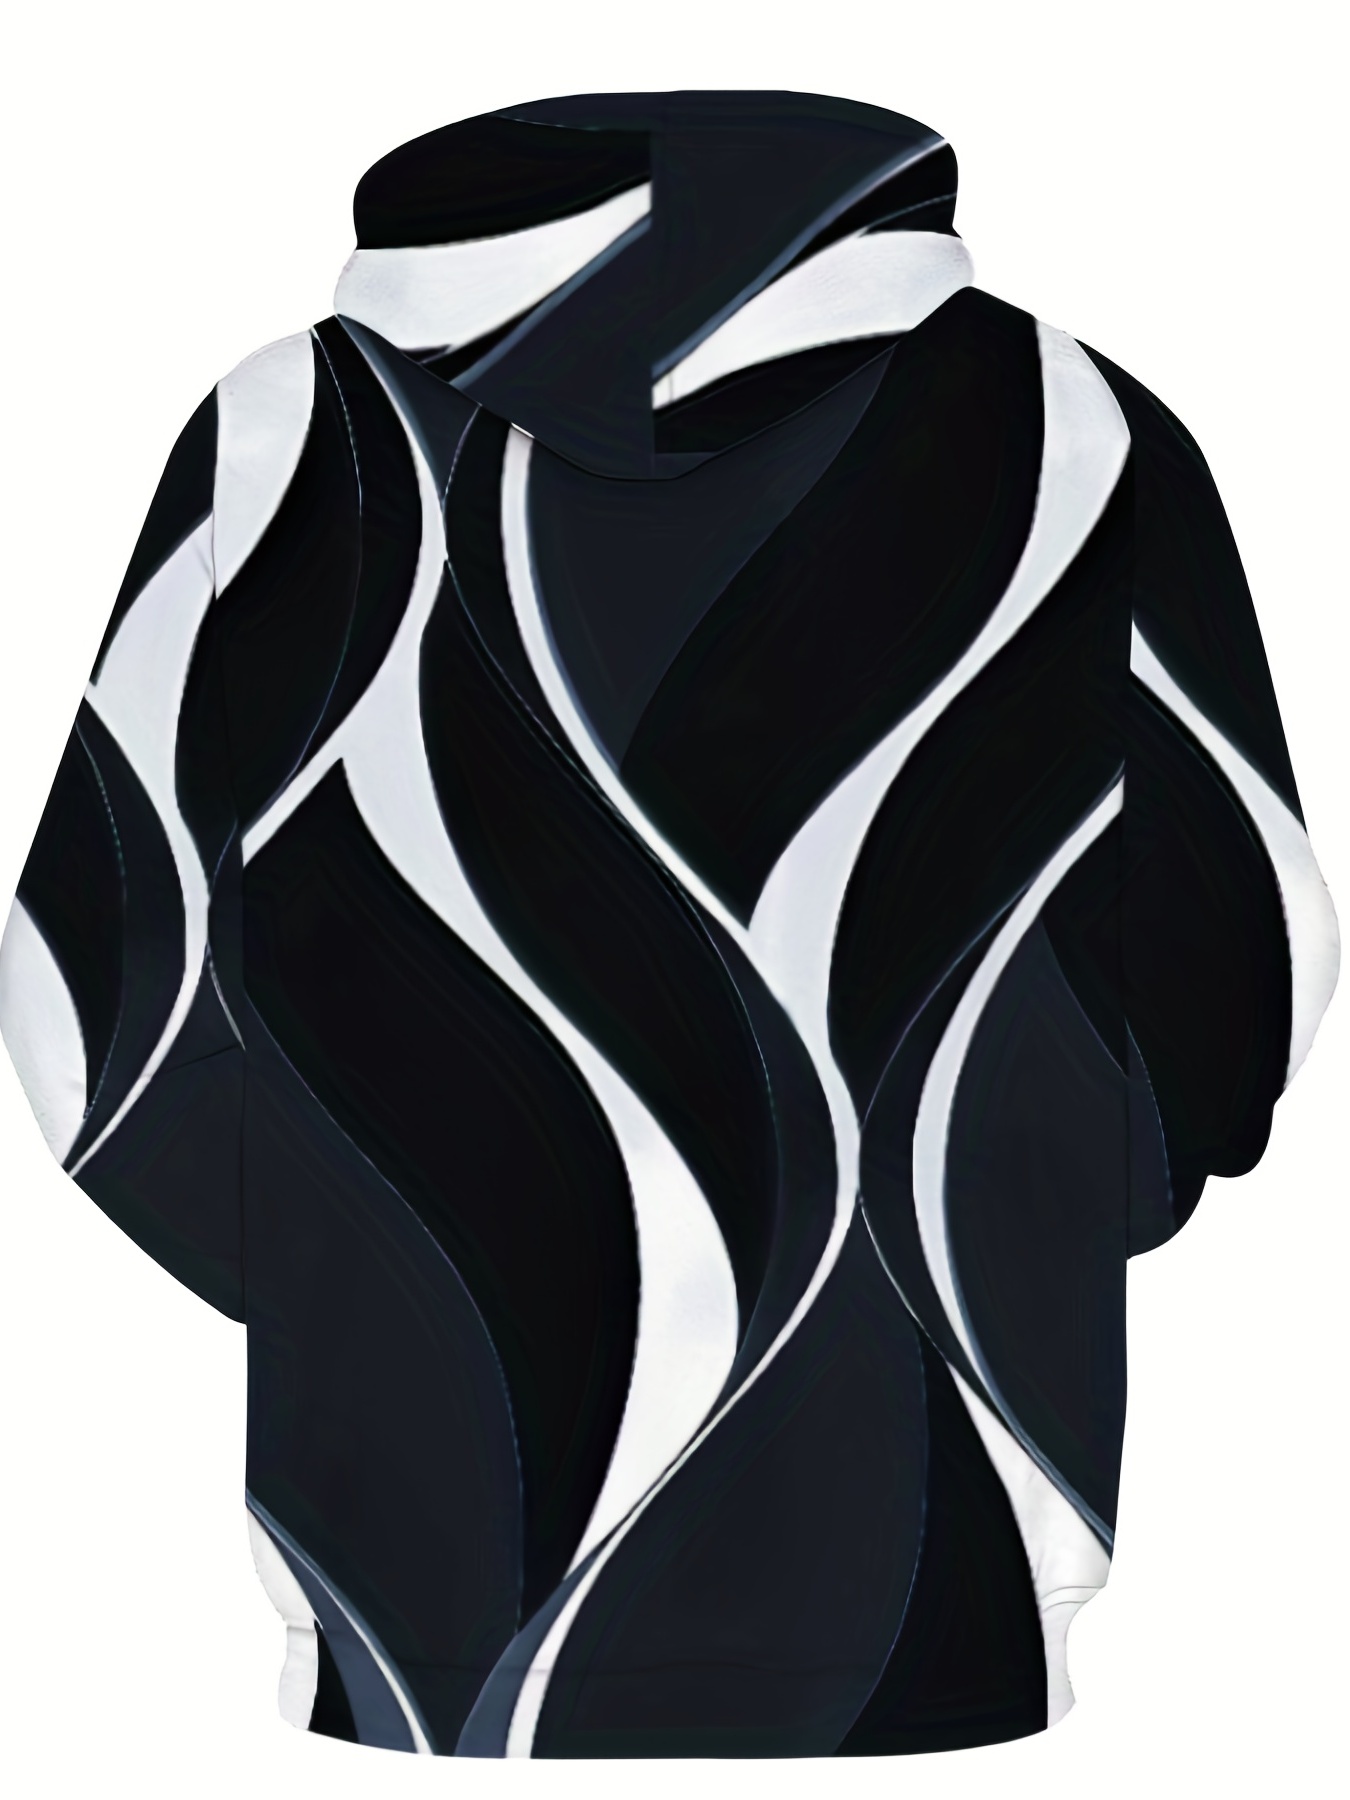 Nuevo Louis Vuitton Logo LV Impresión 3D Primavera Otoño Moda Sudadera Con  Capucha Hombres Mujeres Jersey Marca Al Aire Libre Jogging Streetwear Tops